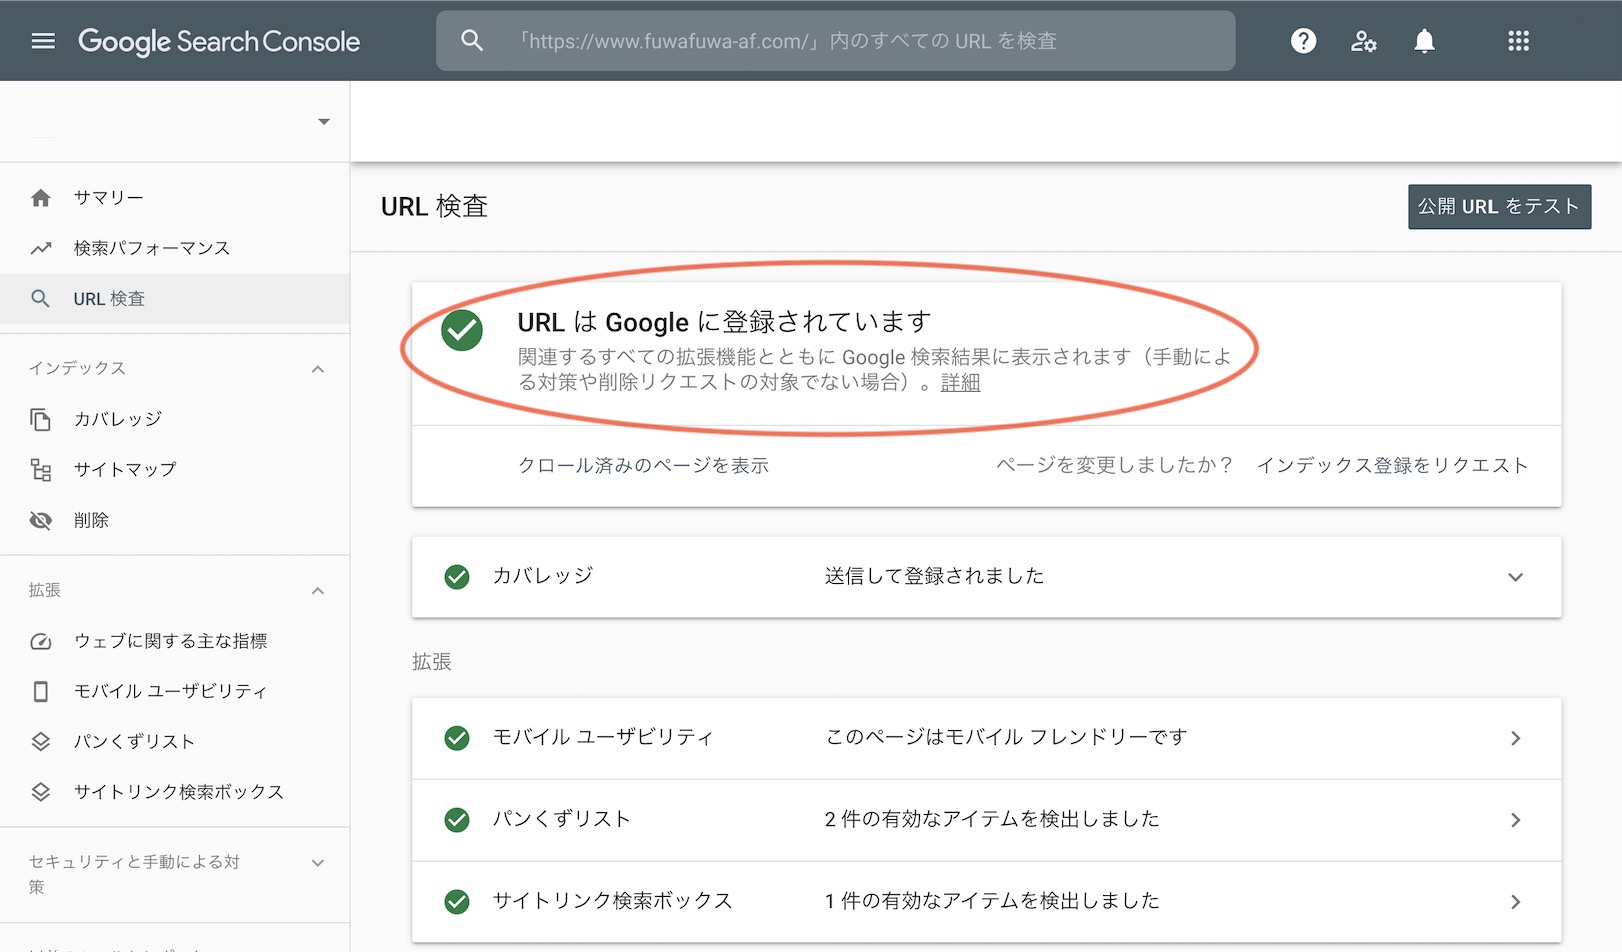 GoogleサーチコンソールのURL検査OKの図解説明の画像